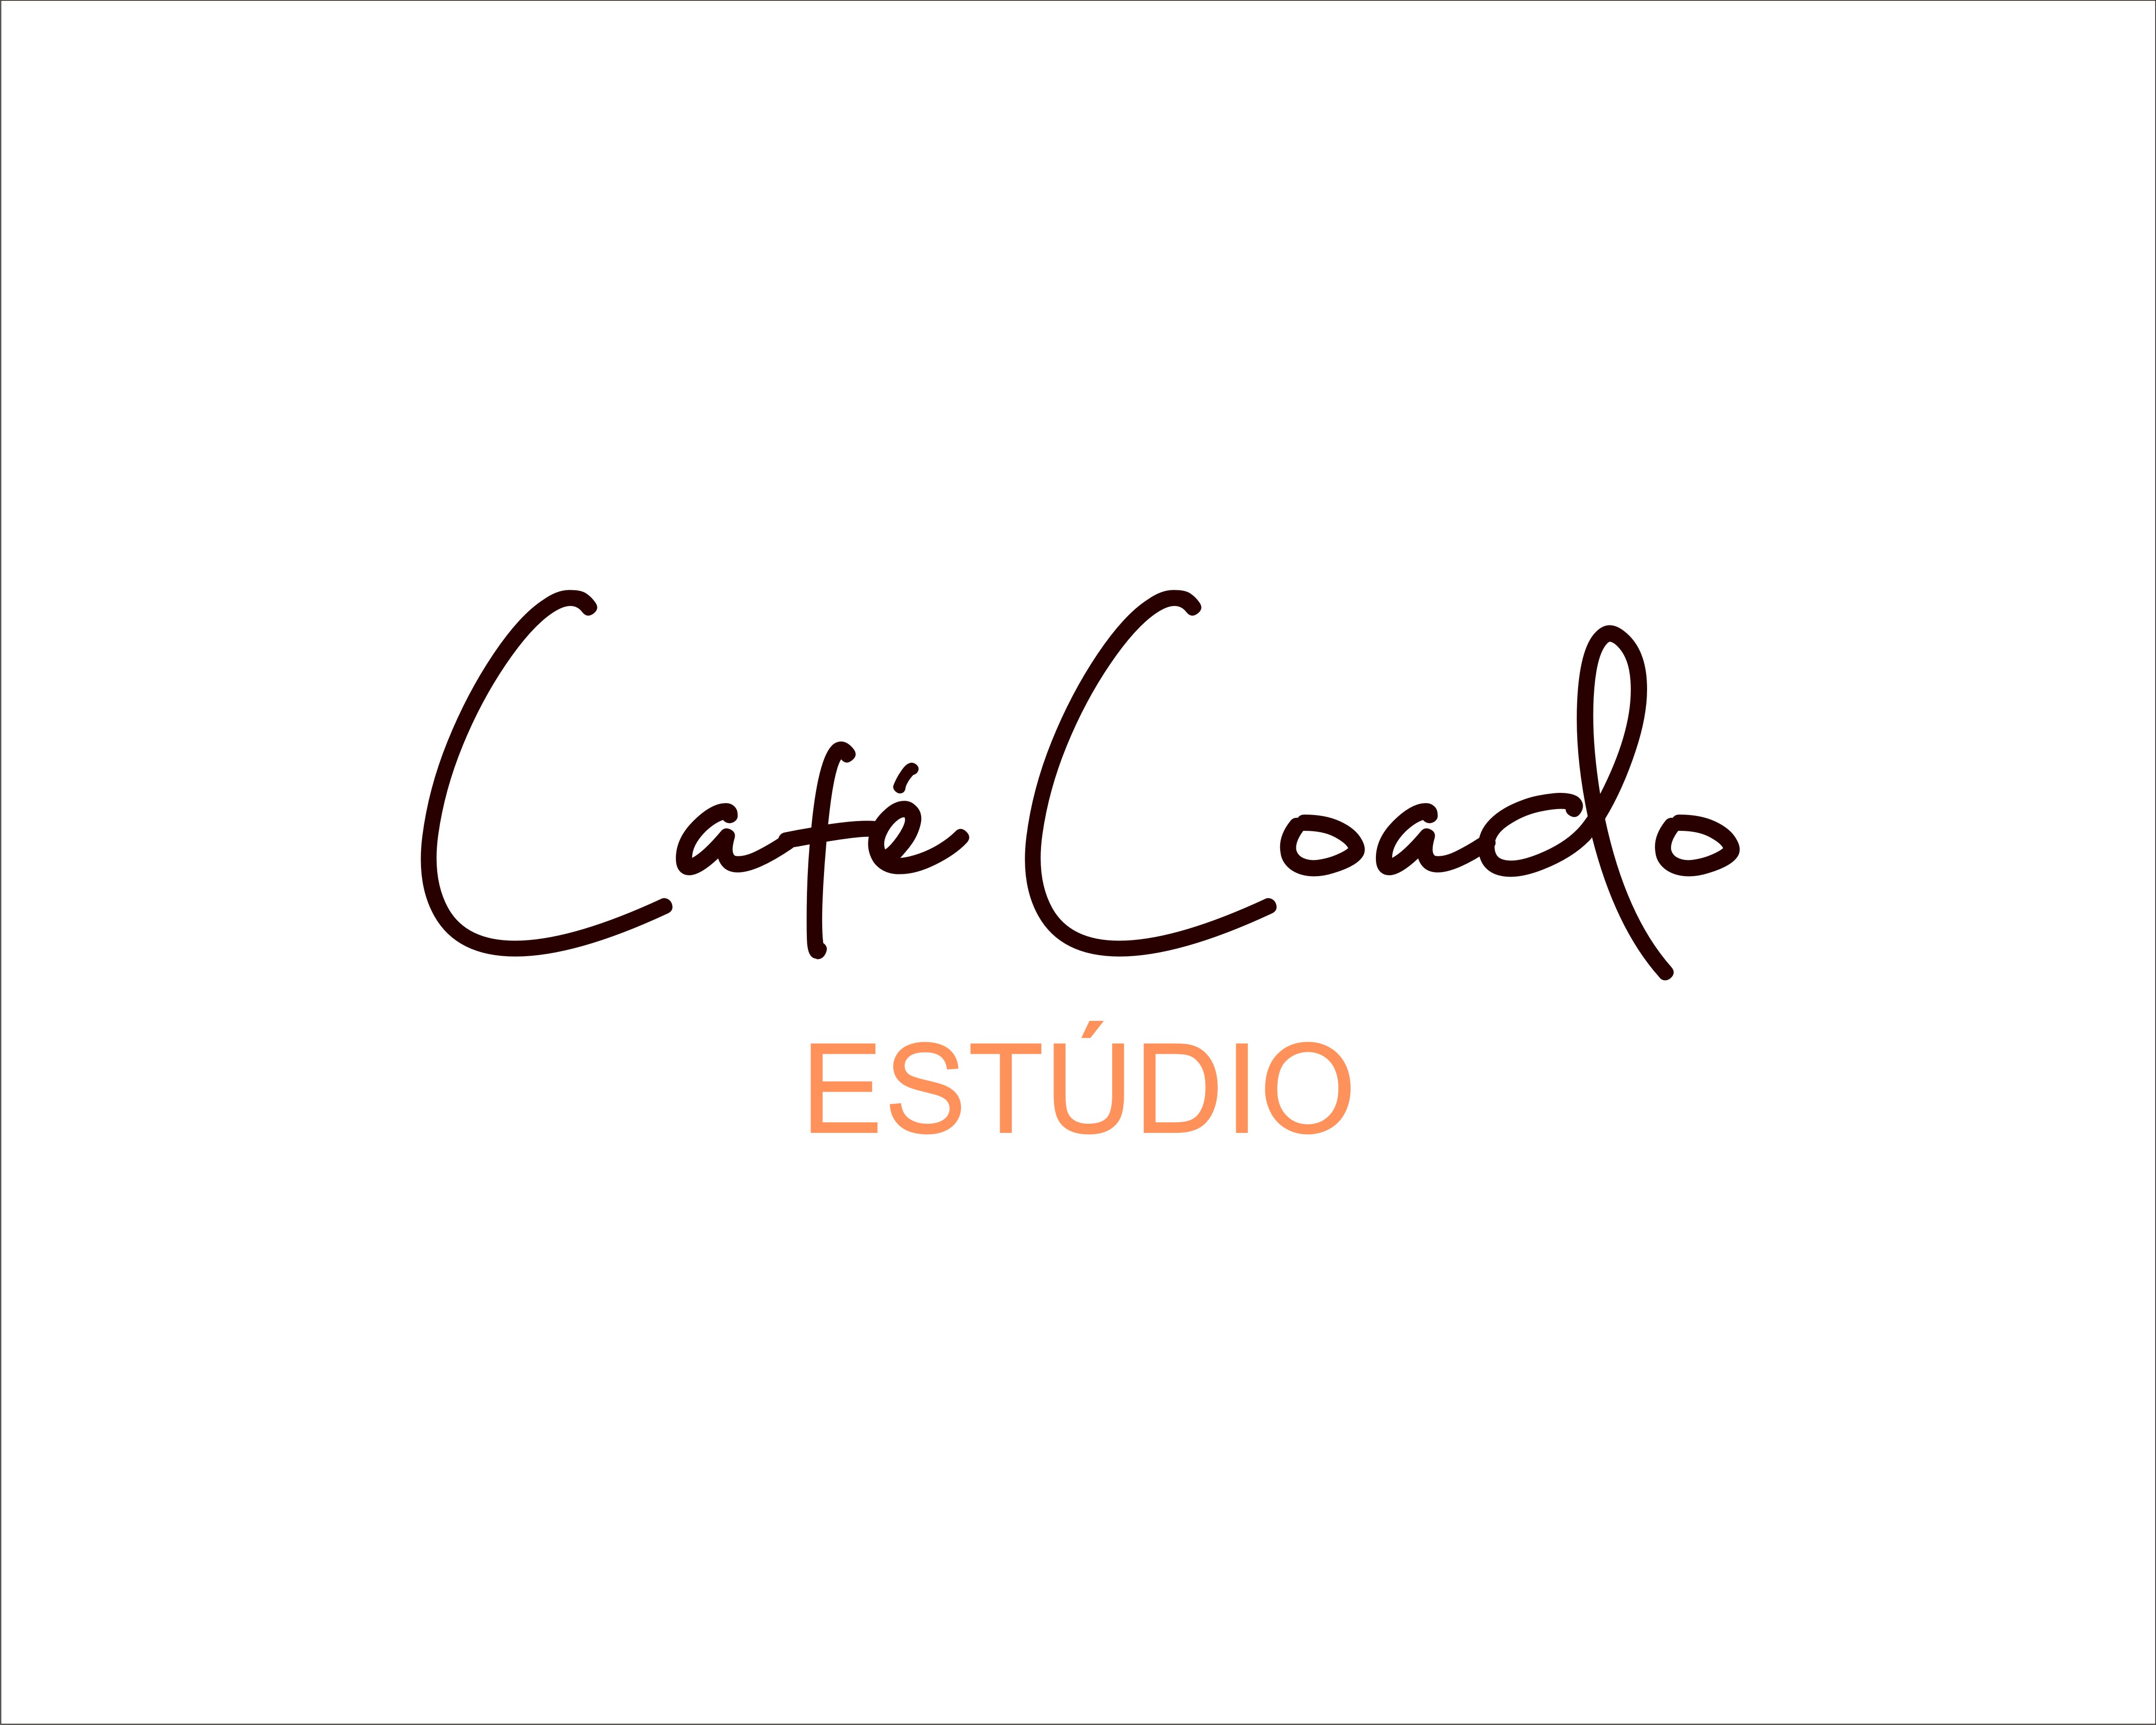 Logo Design entry 1943275 submitted by Logo Allergic to the Logo Design for Estúdio Café Coado run by Camila